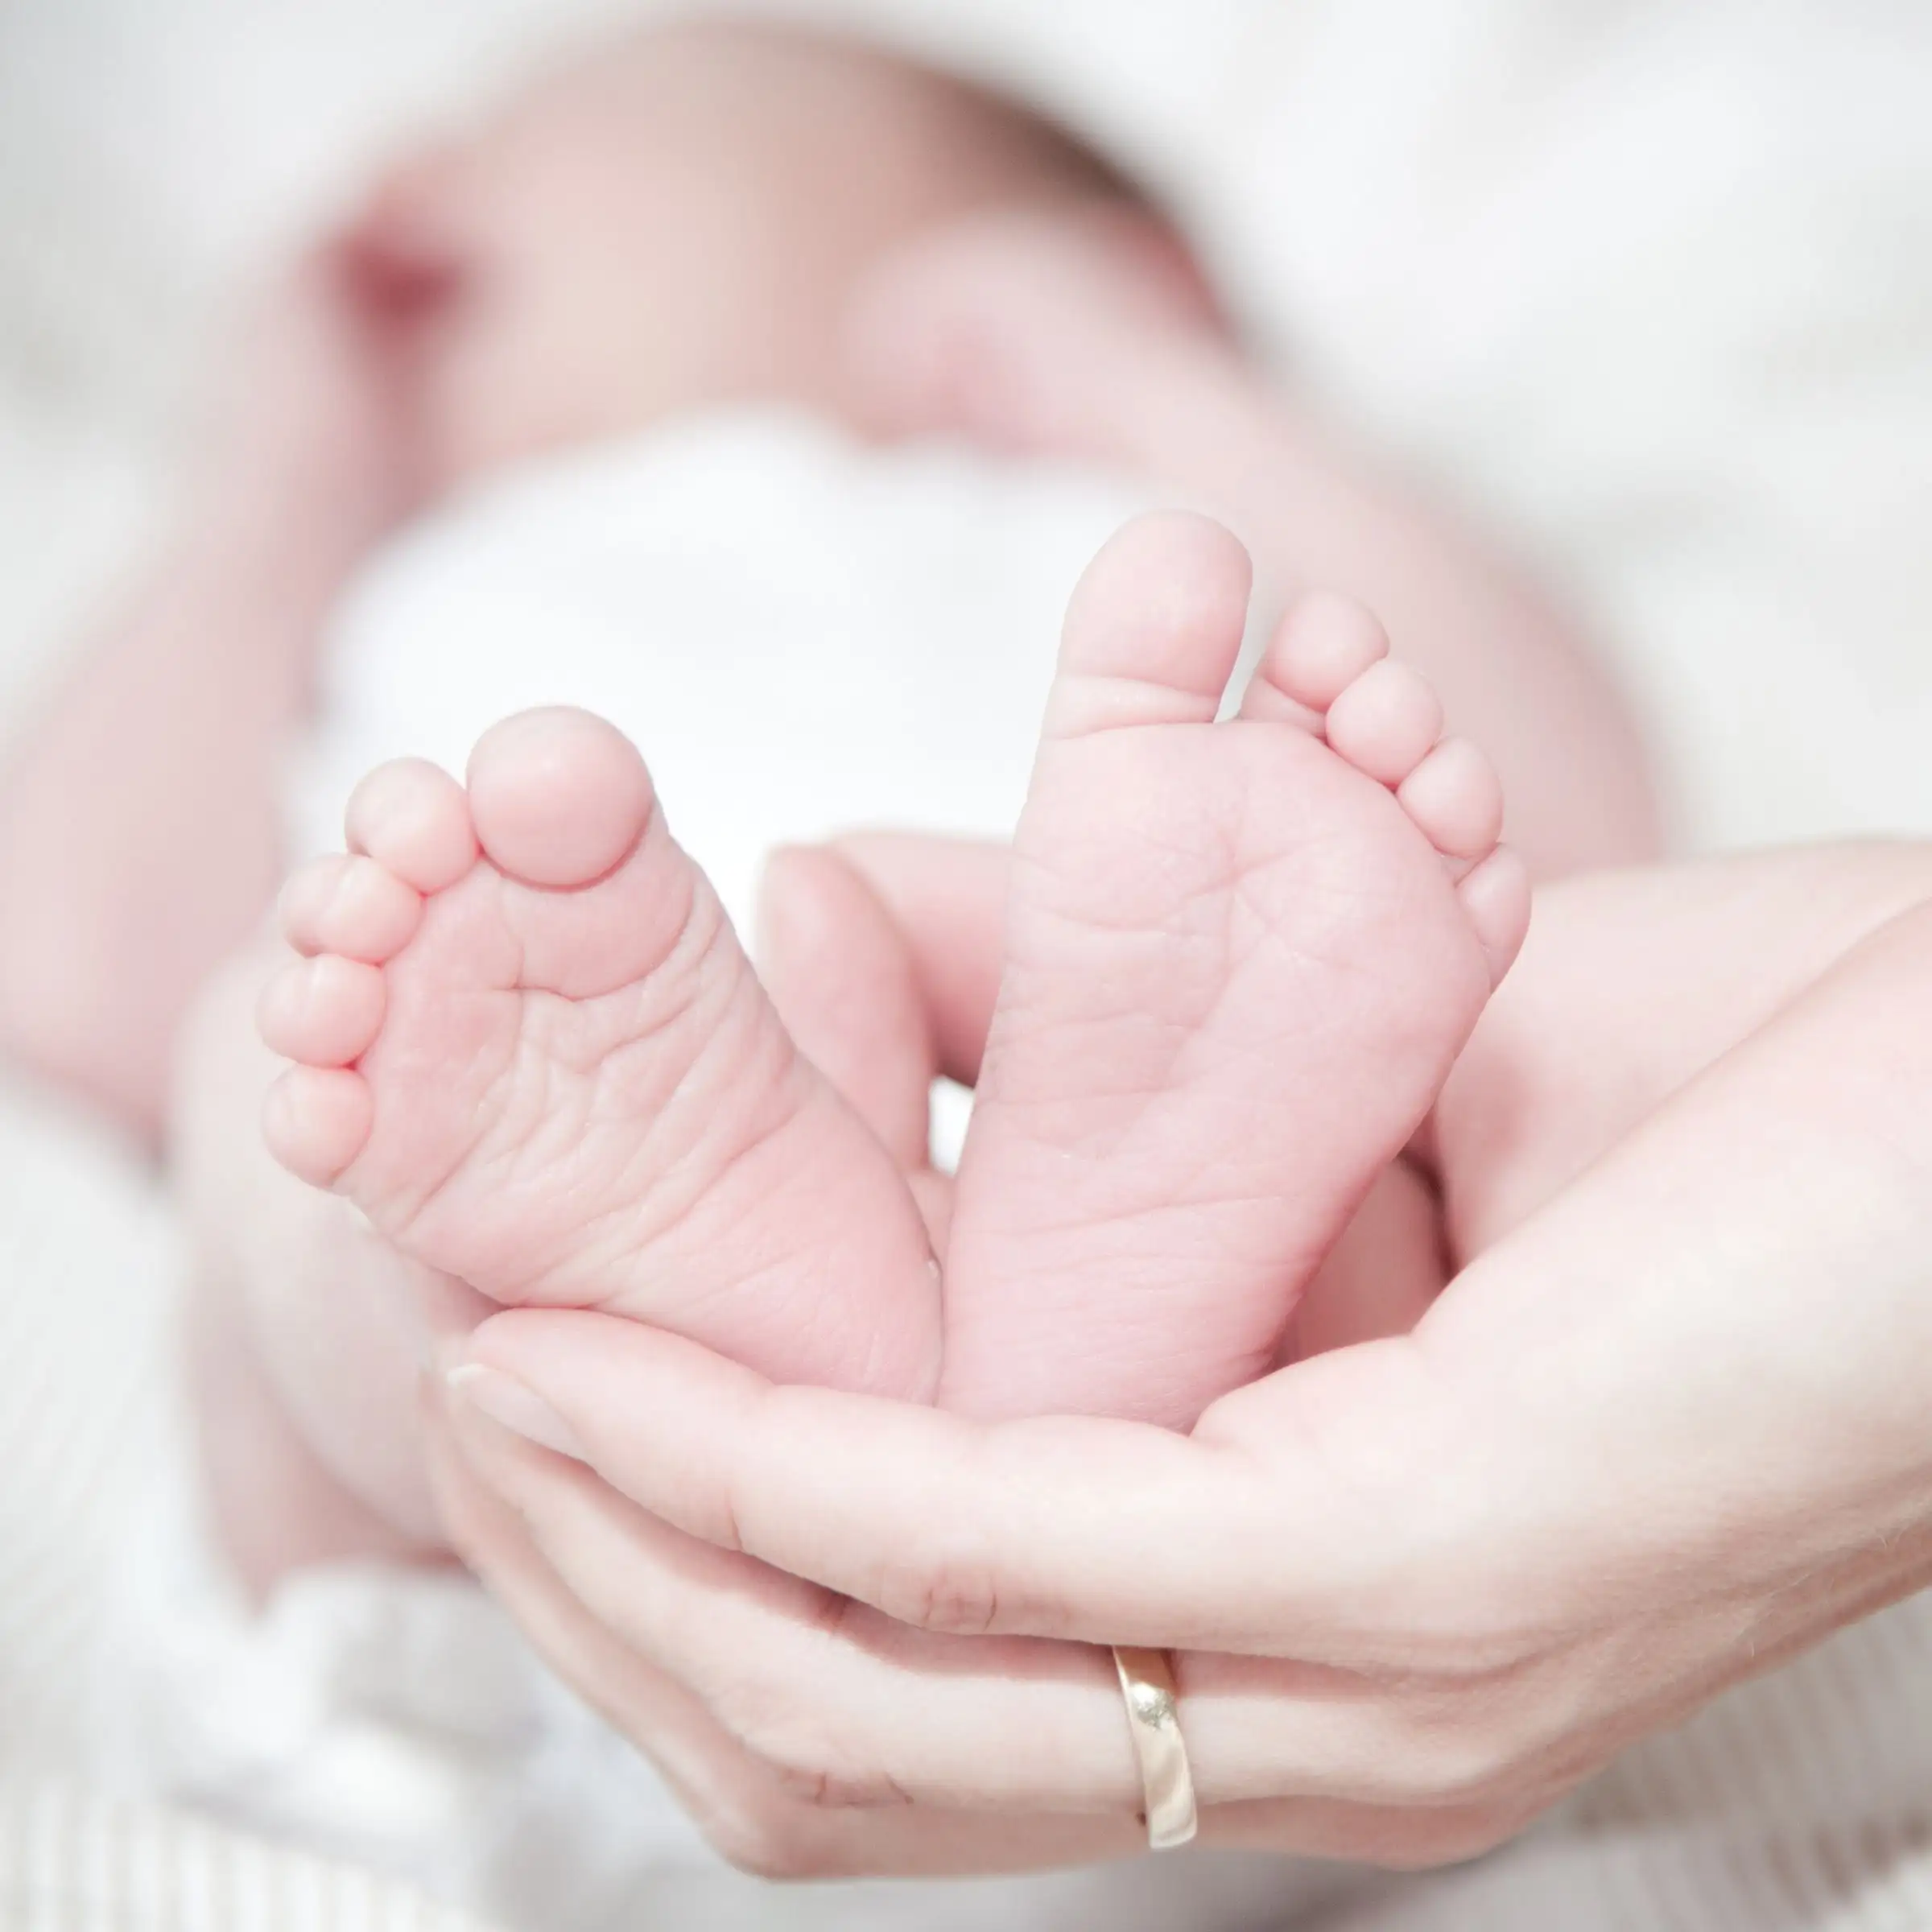 Child Birth Related Problems – Acharya Upamanyu